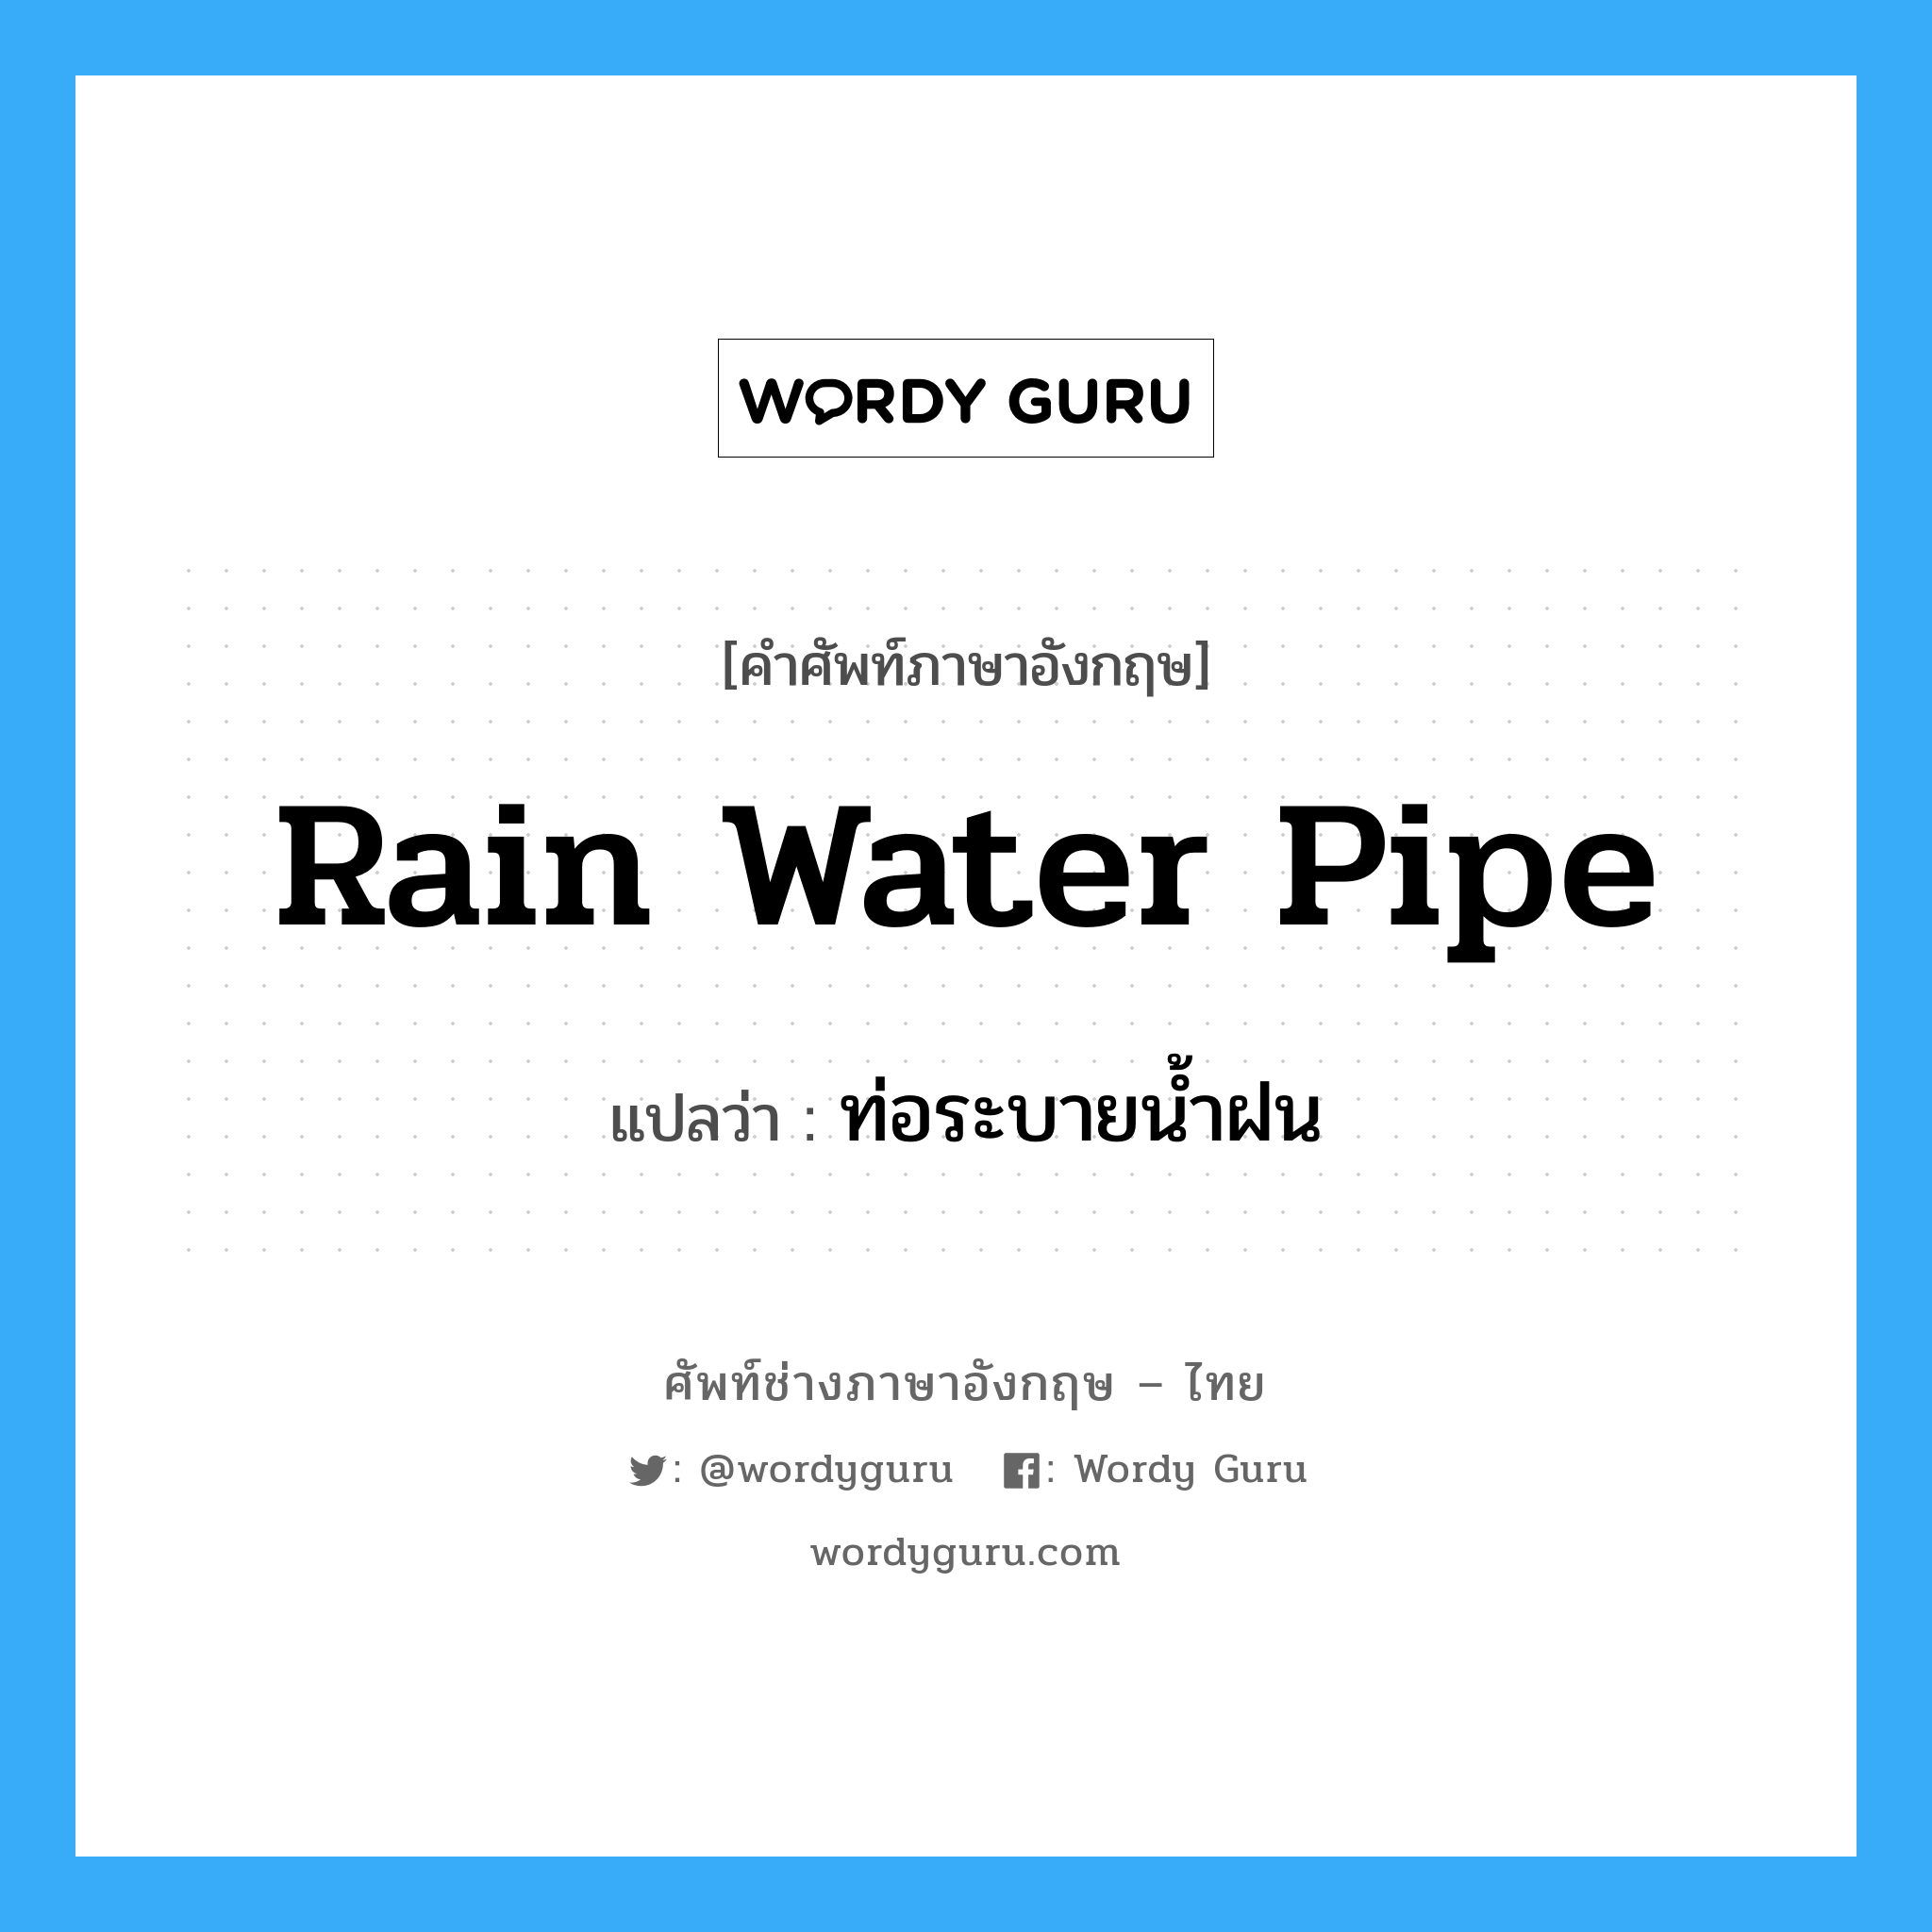 rain water pipe แปลว่า?, คำศัพท์ช่างภาษาอังกฤษ - ไทย rain water pipe คำศัพท์ภาษาอังกฤษ rain water pipe แปลว่า ท่อระบายน้ำฝน